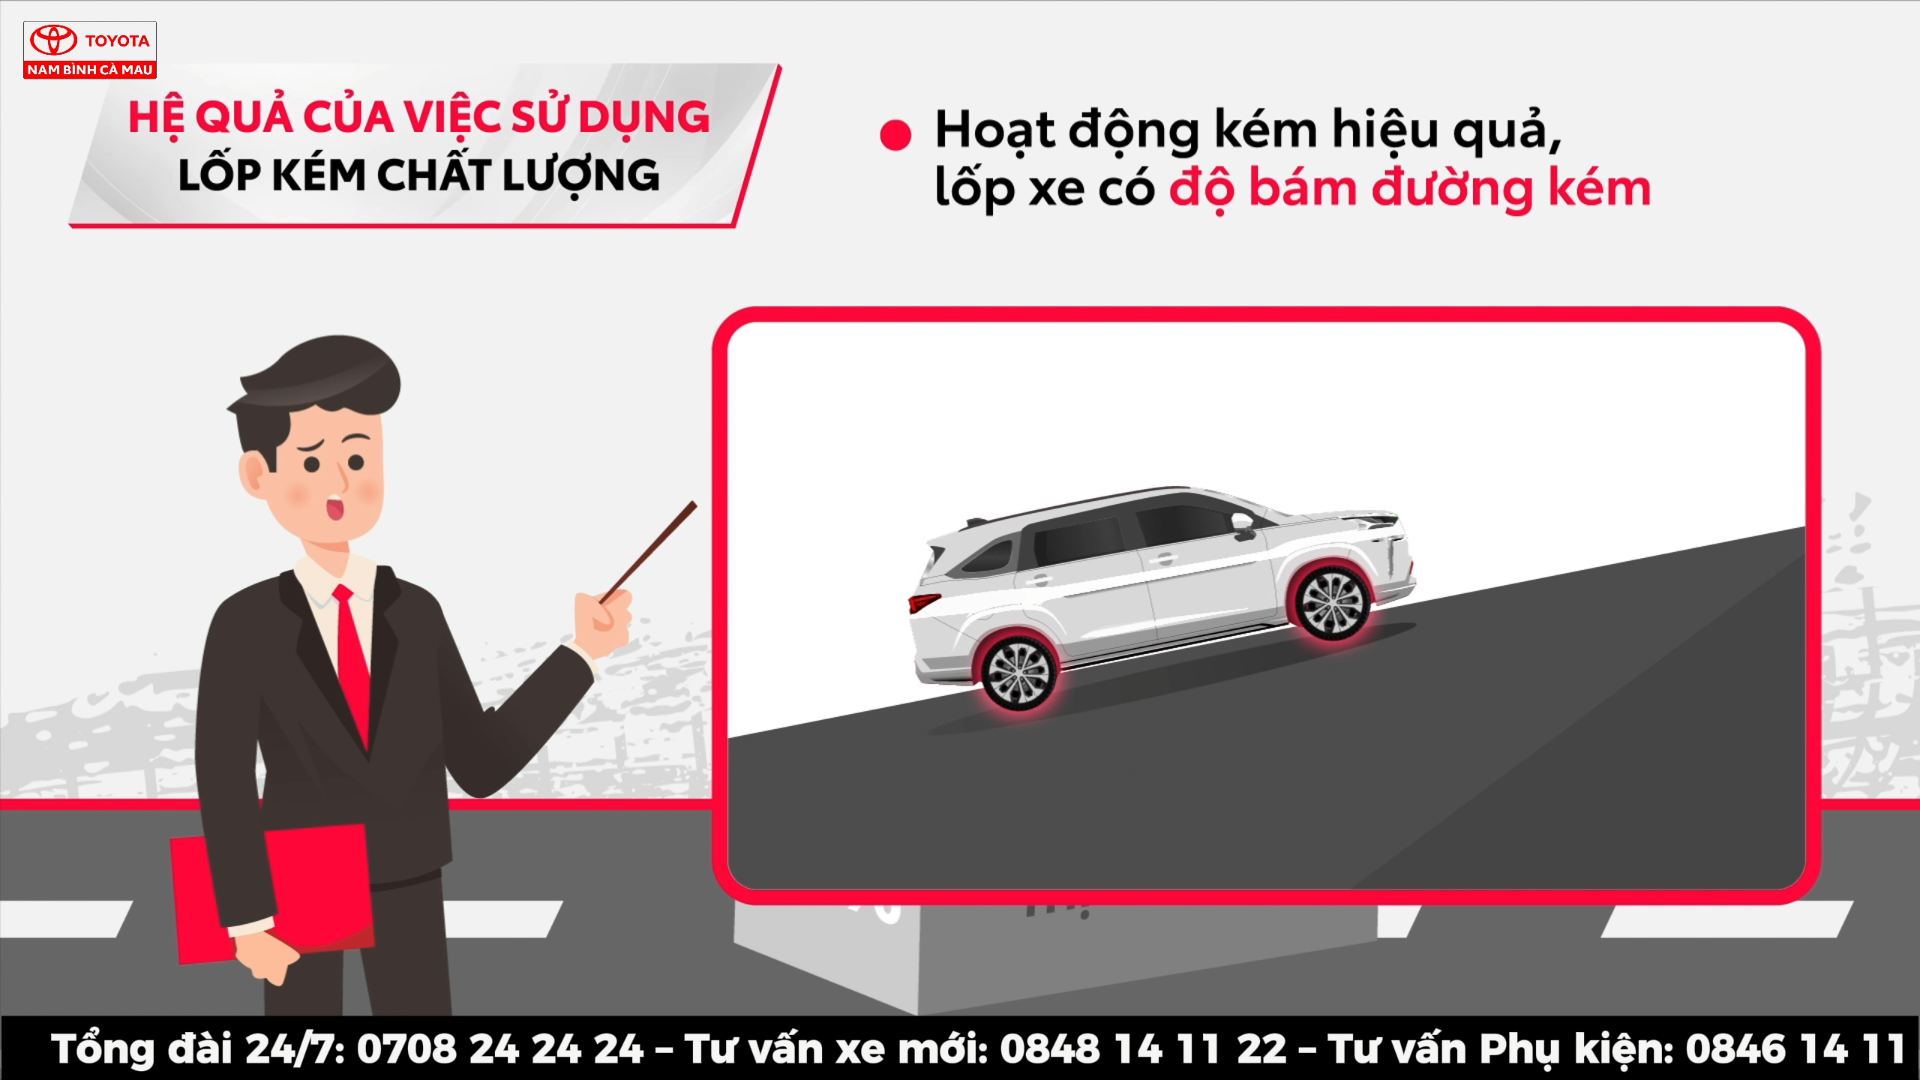 Toyota Việt Nam triển khai chương trình ưu đãi dịch vụ lên tới 20% khi thay dầu và lọc dầu cho xe Vios và Innova